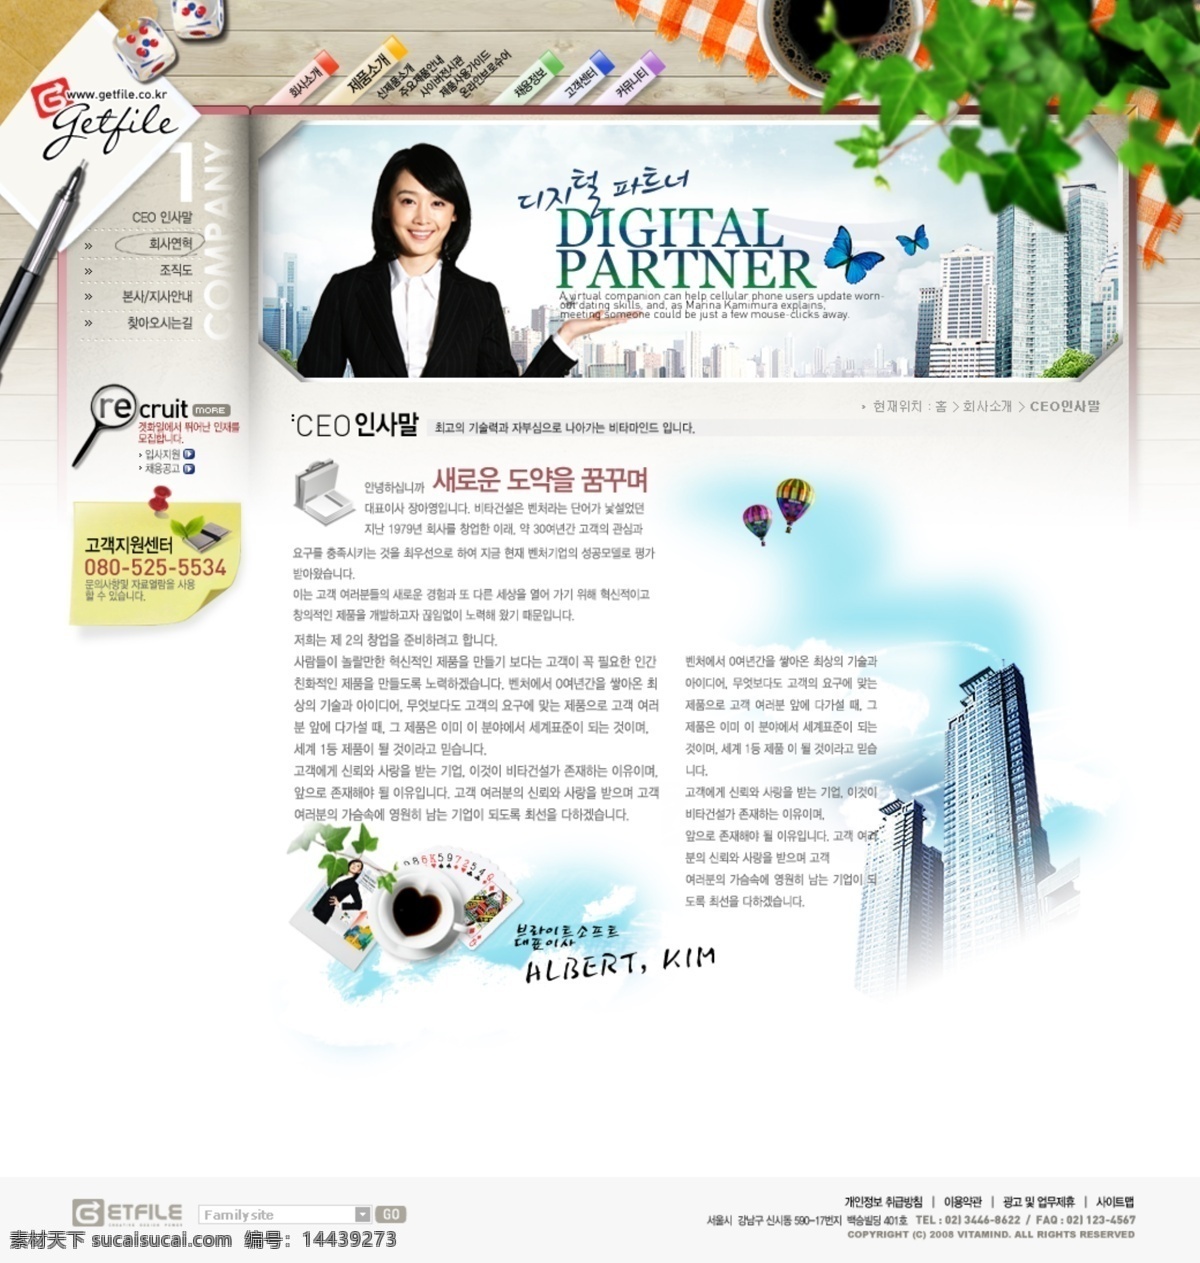 精美 韩国公司 展示 模版 网站 公司展示 韩国 蜡笔 绿叶 模版网站 精美模版 网页素材 网页模板